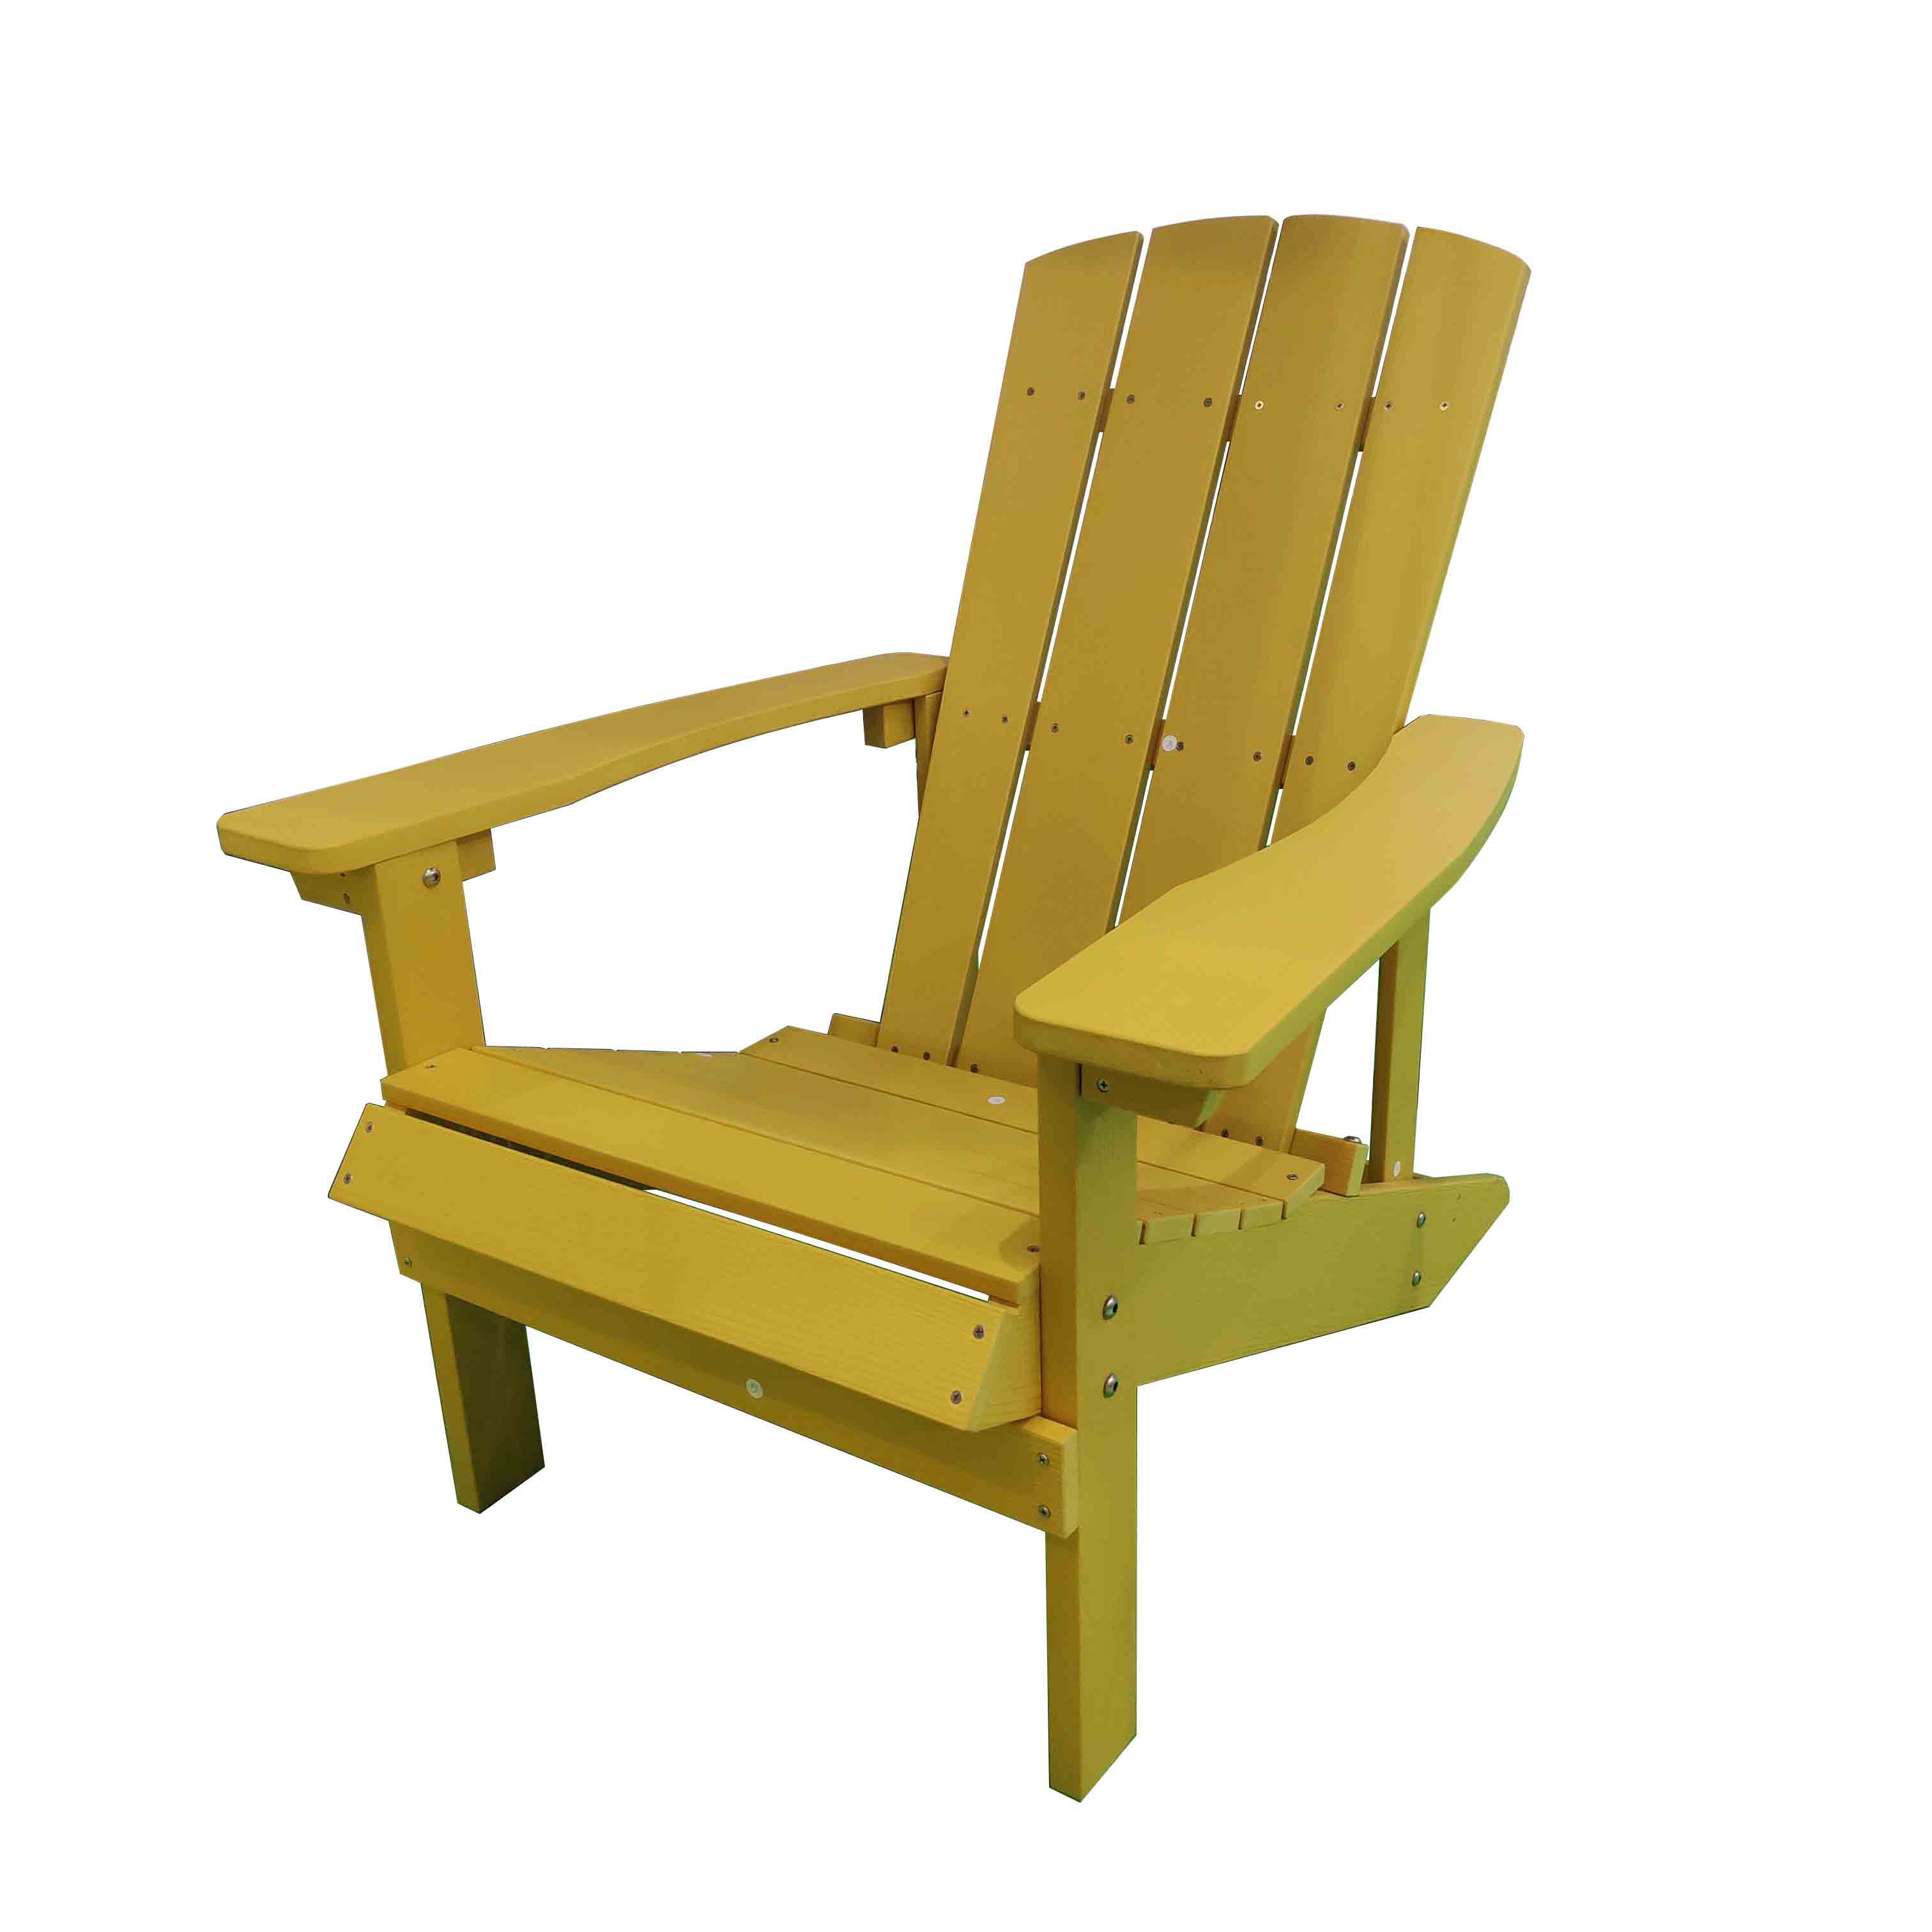 100% Original Fishing Folding Chair - JJ-C14501-YLW-GG PS wood Adirondack chair – Jin-jiang Industry